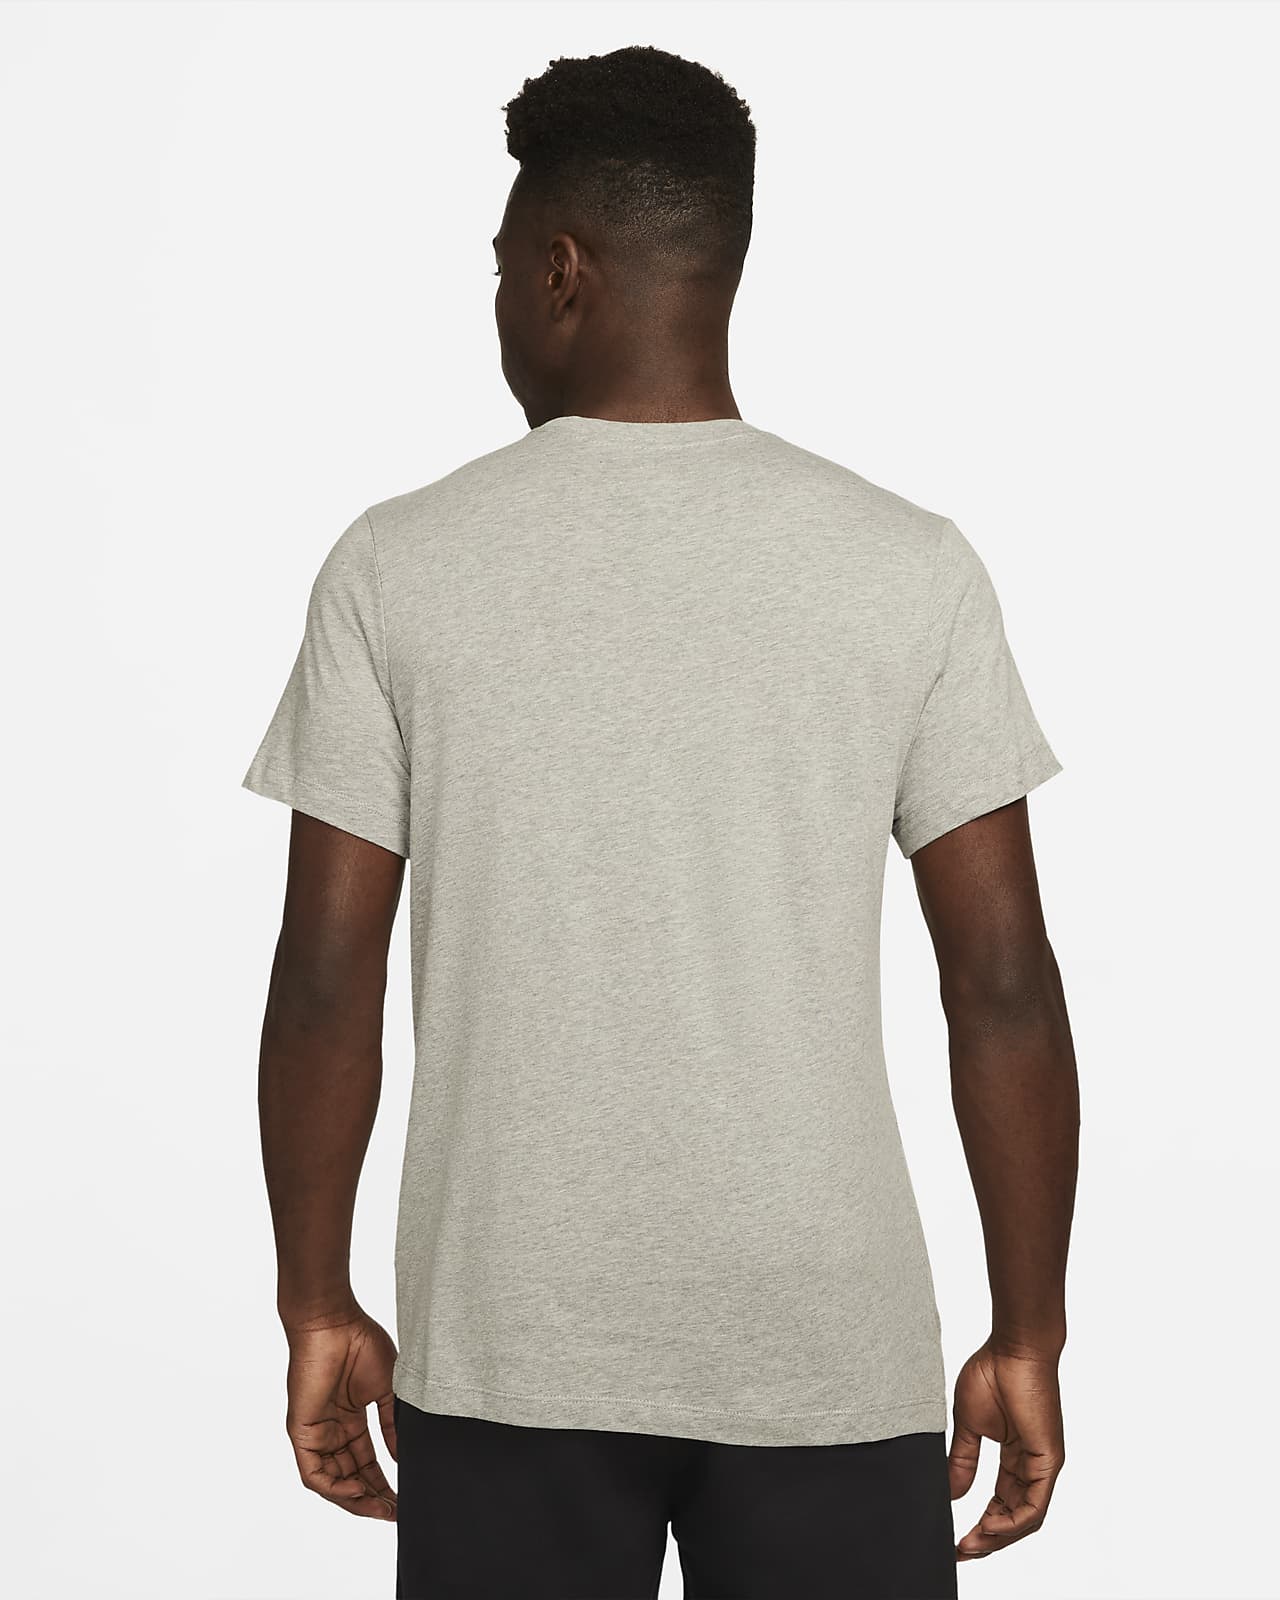 tijdelijk Ploeg spons Nike Swoosh Men's Soccer T-Shirt. Nike.com